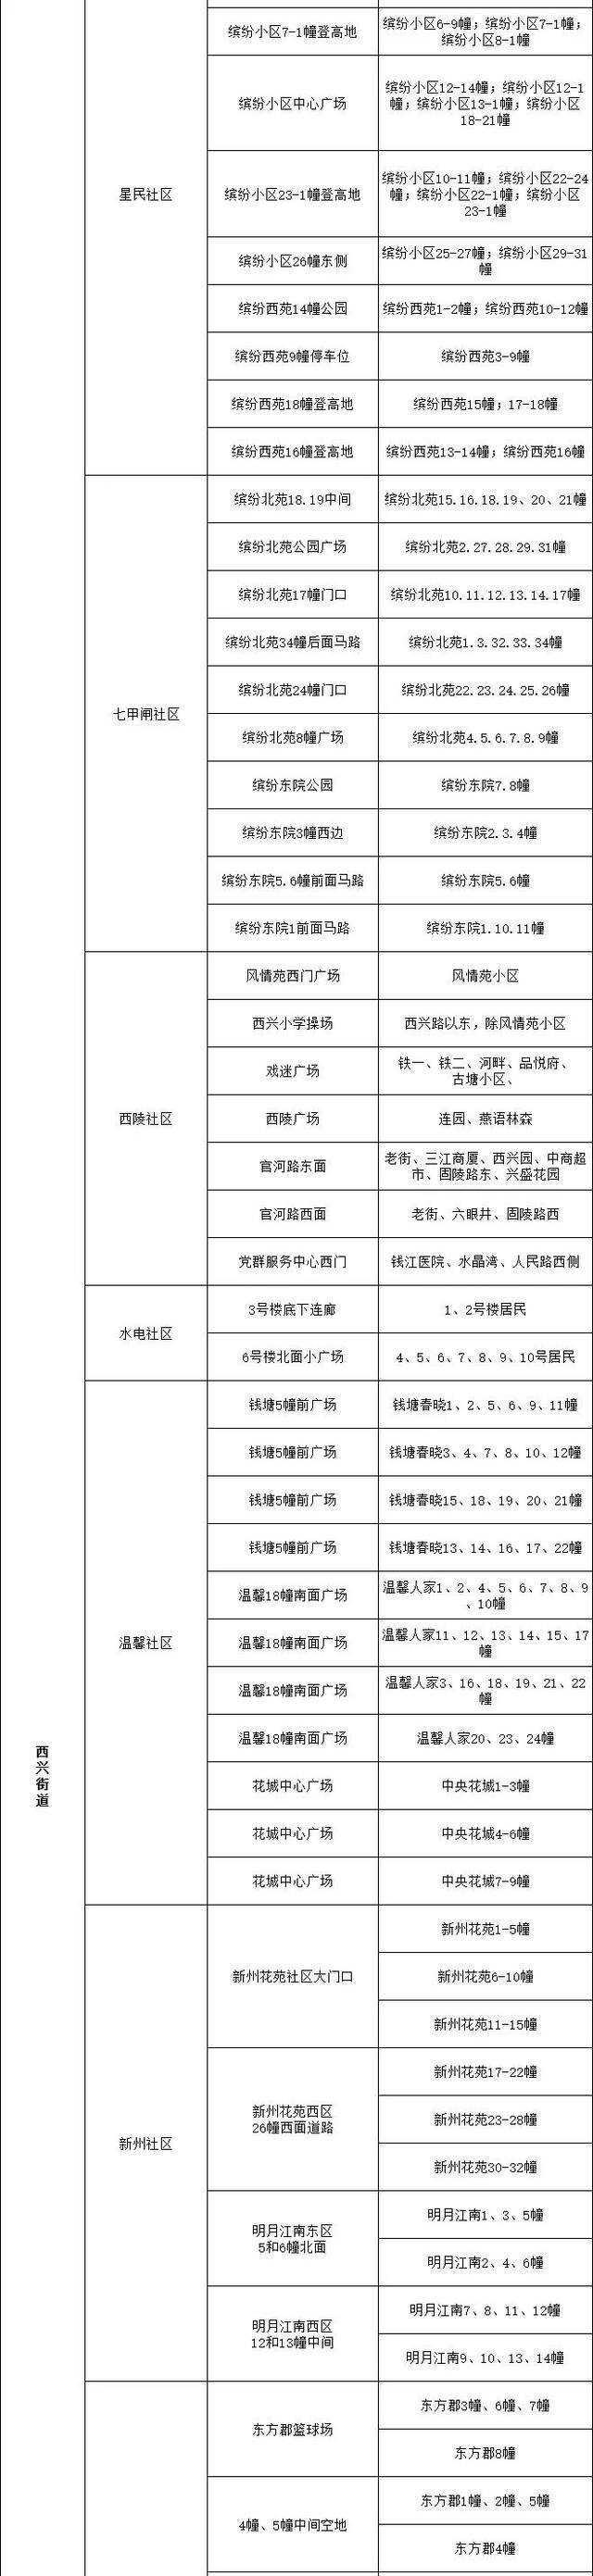 杭州市滨江区发布通告：开展全区域核酸检测